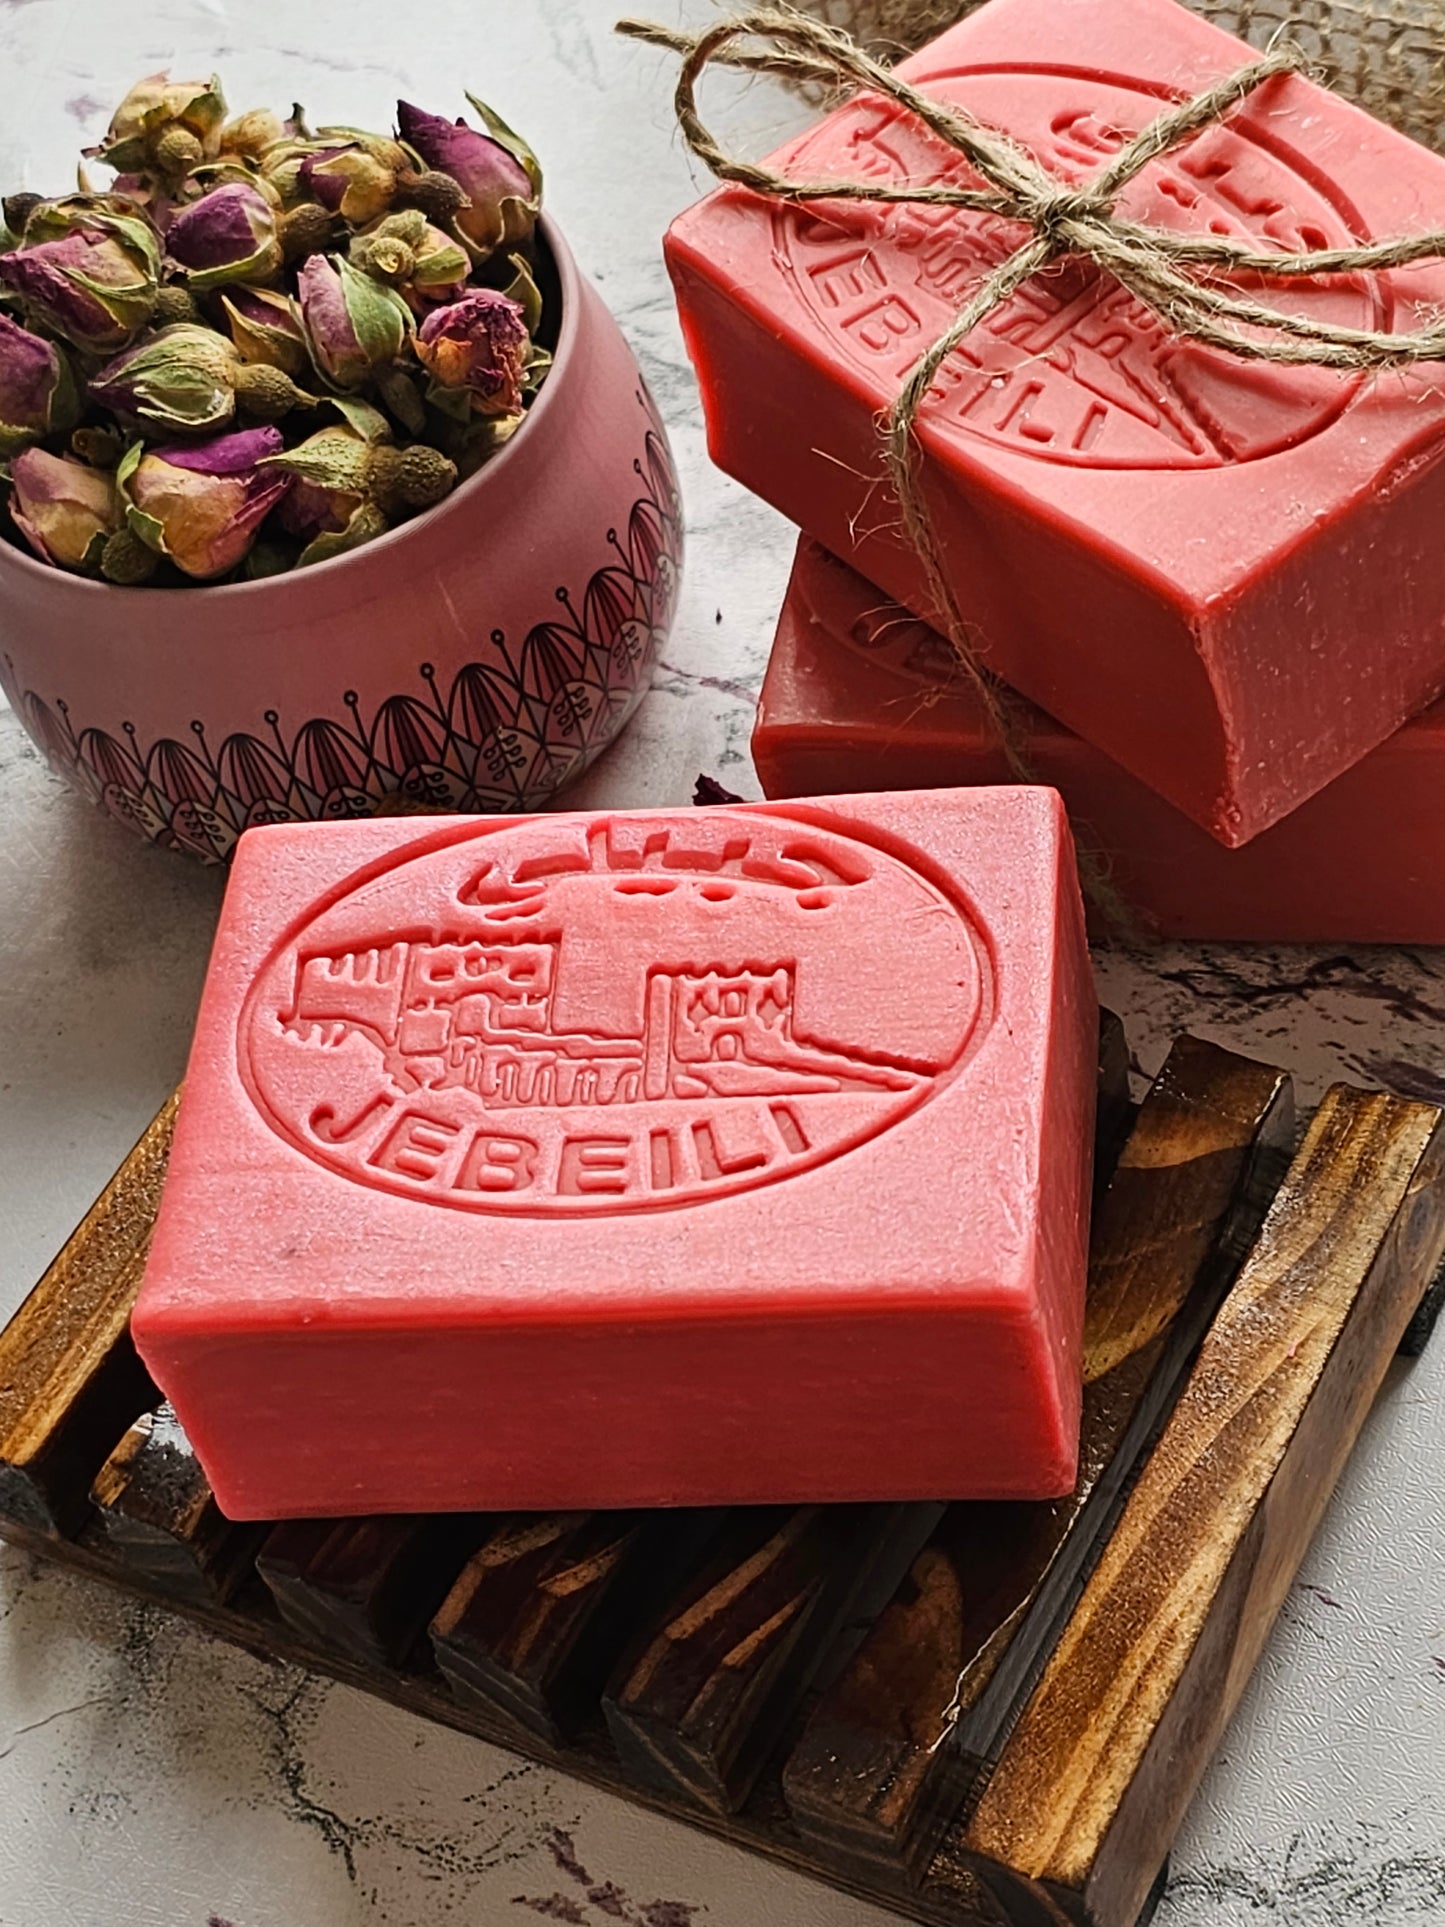 Jebeili Damask Rose Soap